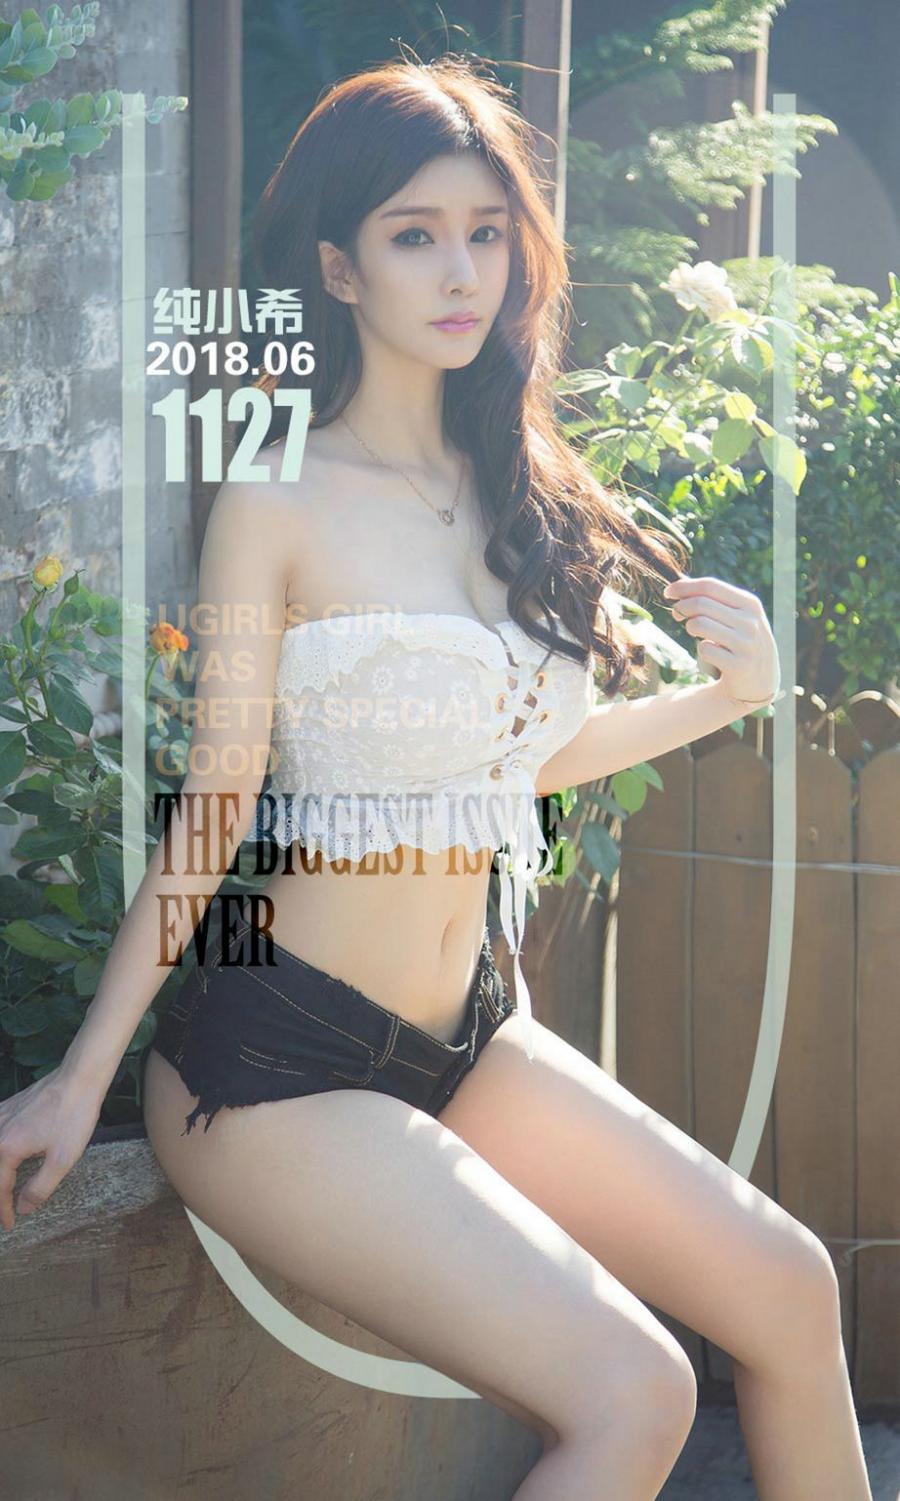 Ugirls App Vol. 1127 Chun Xiao Xi